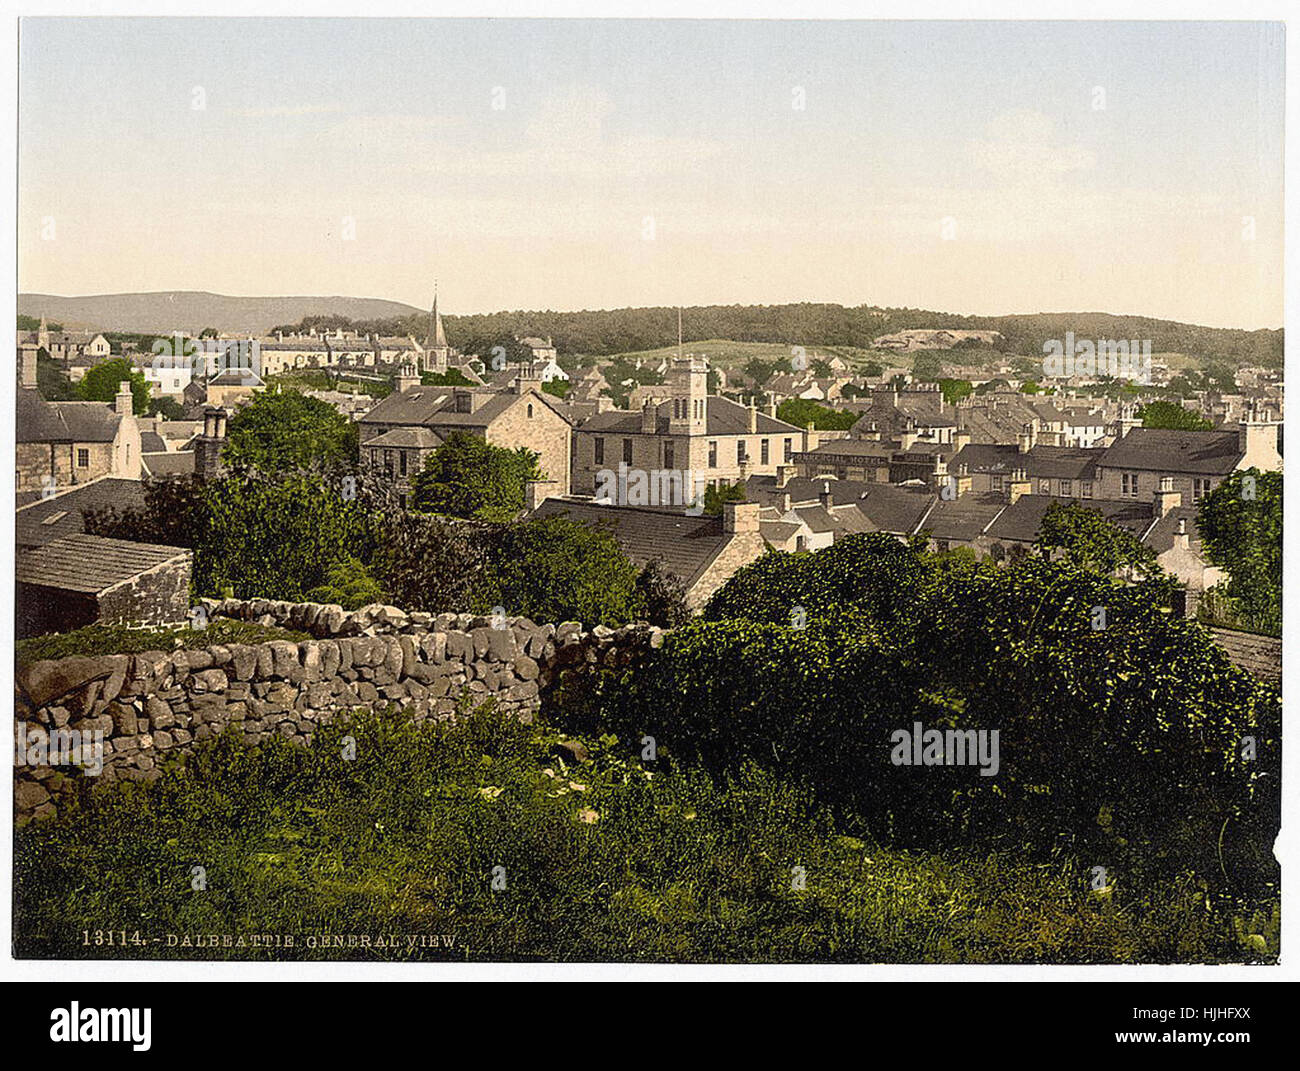 Gesamtansicht, Dalbeattie, Schottland - Photochrom XIXth Jahrhundert Stockfoto